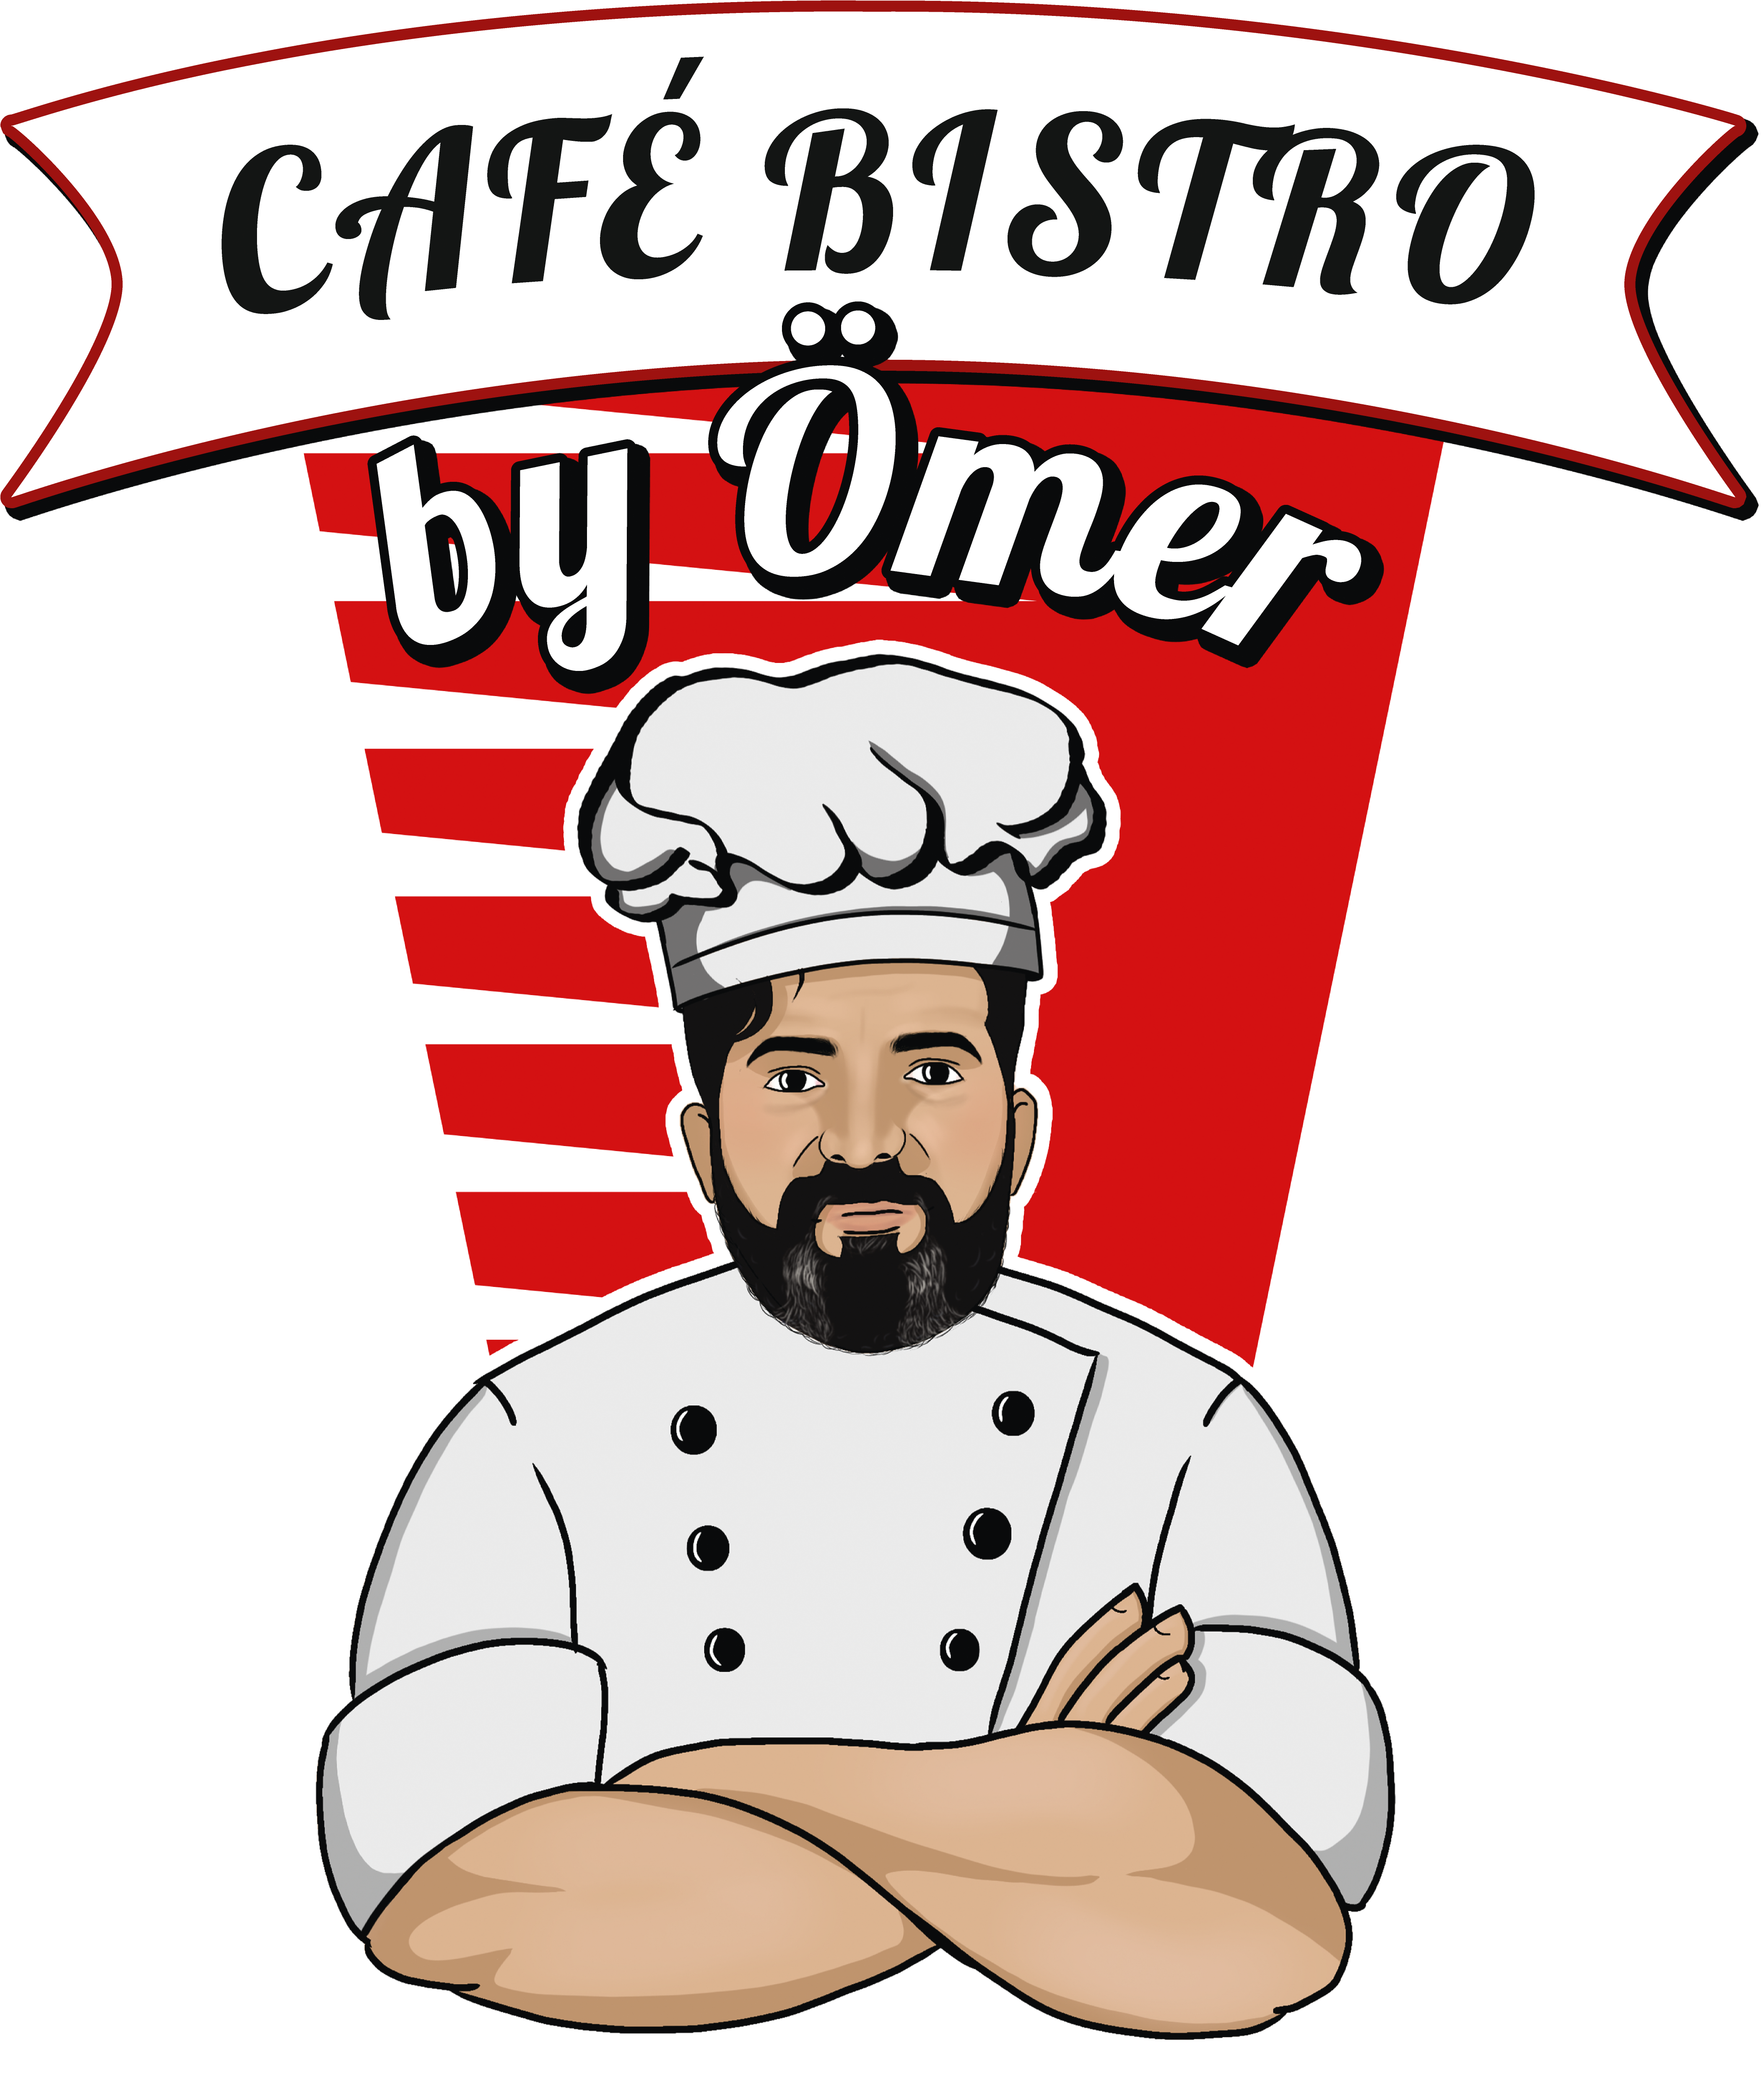 Café Bistro by Ömer